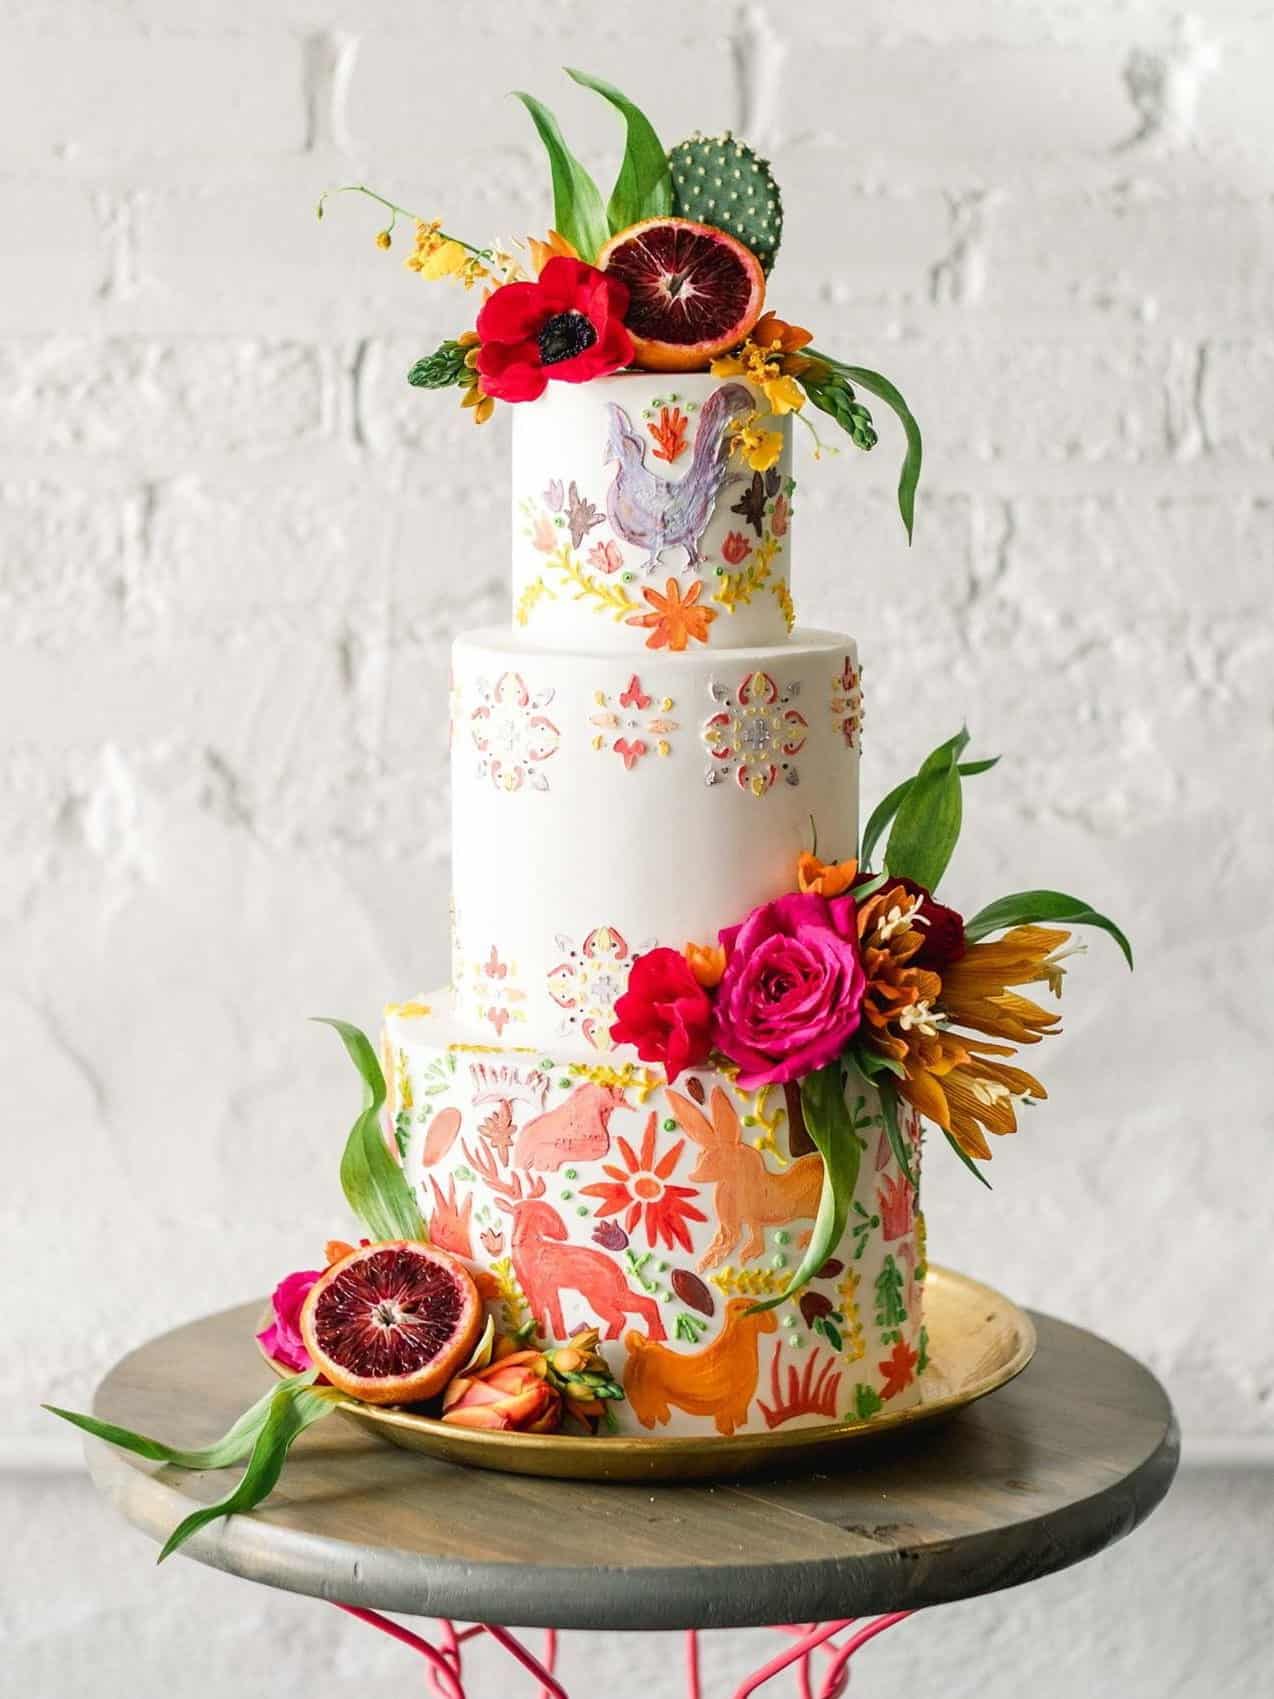 Top 10 Wedding Cake Trends of 2019